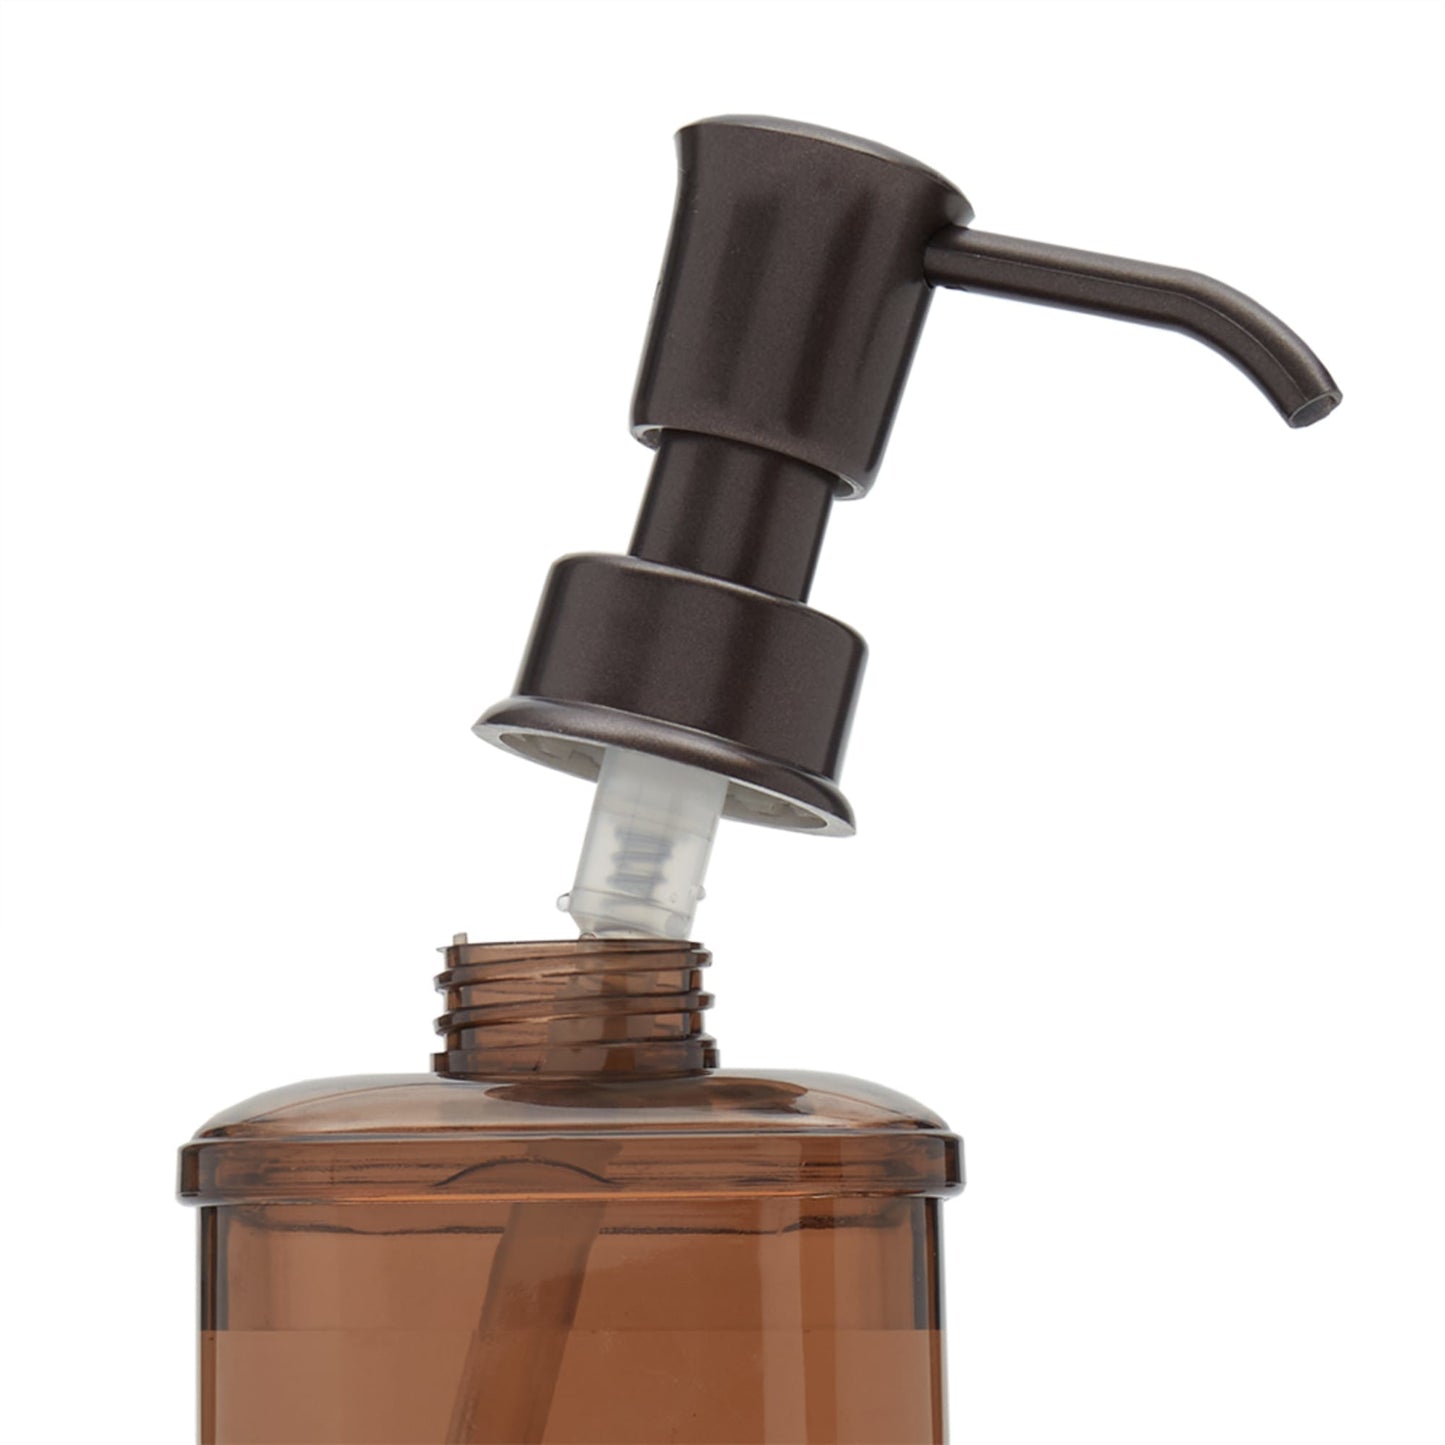 18.6 oz. Soap Dispenser with Basketweave Sponge Holder, Bronze